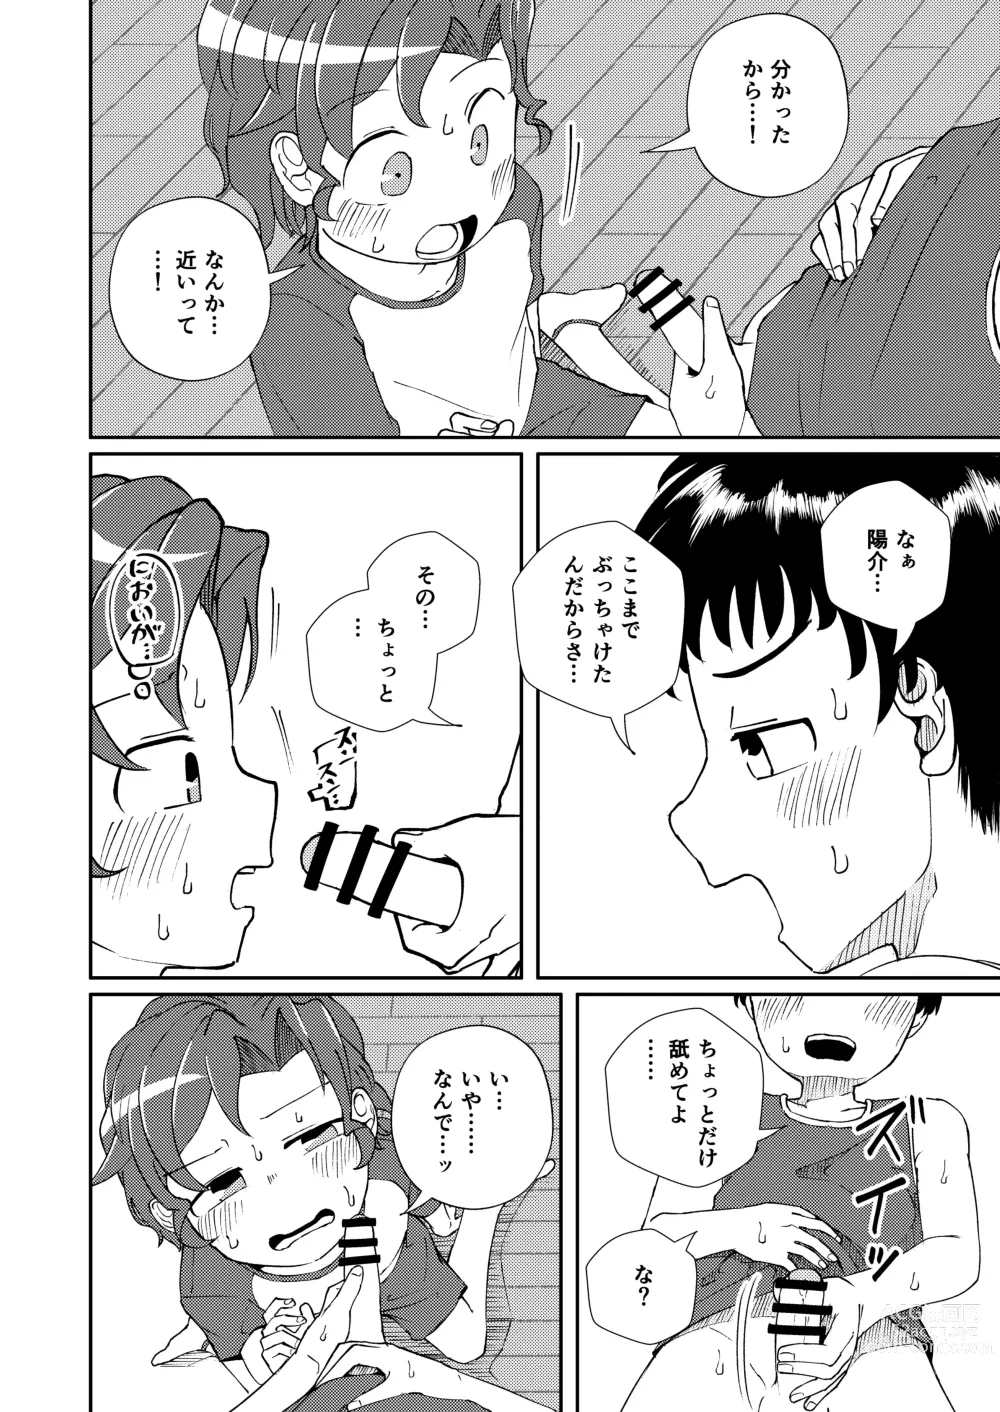 Page 12 of doujinshi Shoujiki Iu to,